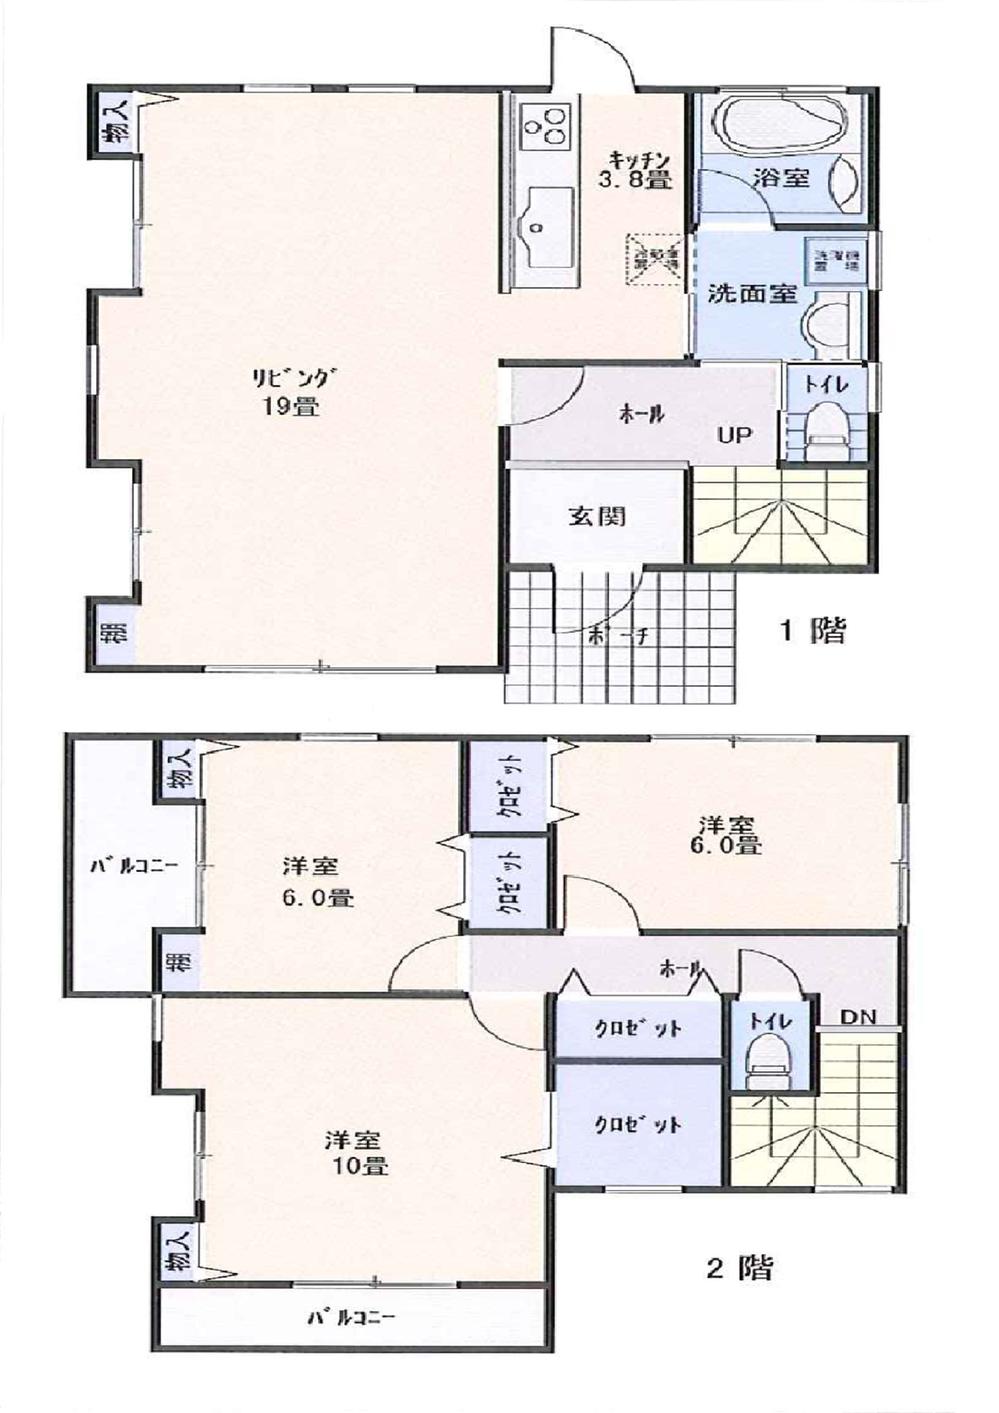 Floor plan. 28.8 million yen, 3LDK, Land area 165.02 sq m , Building area 110.31 sq m